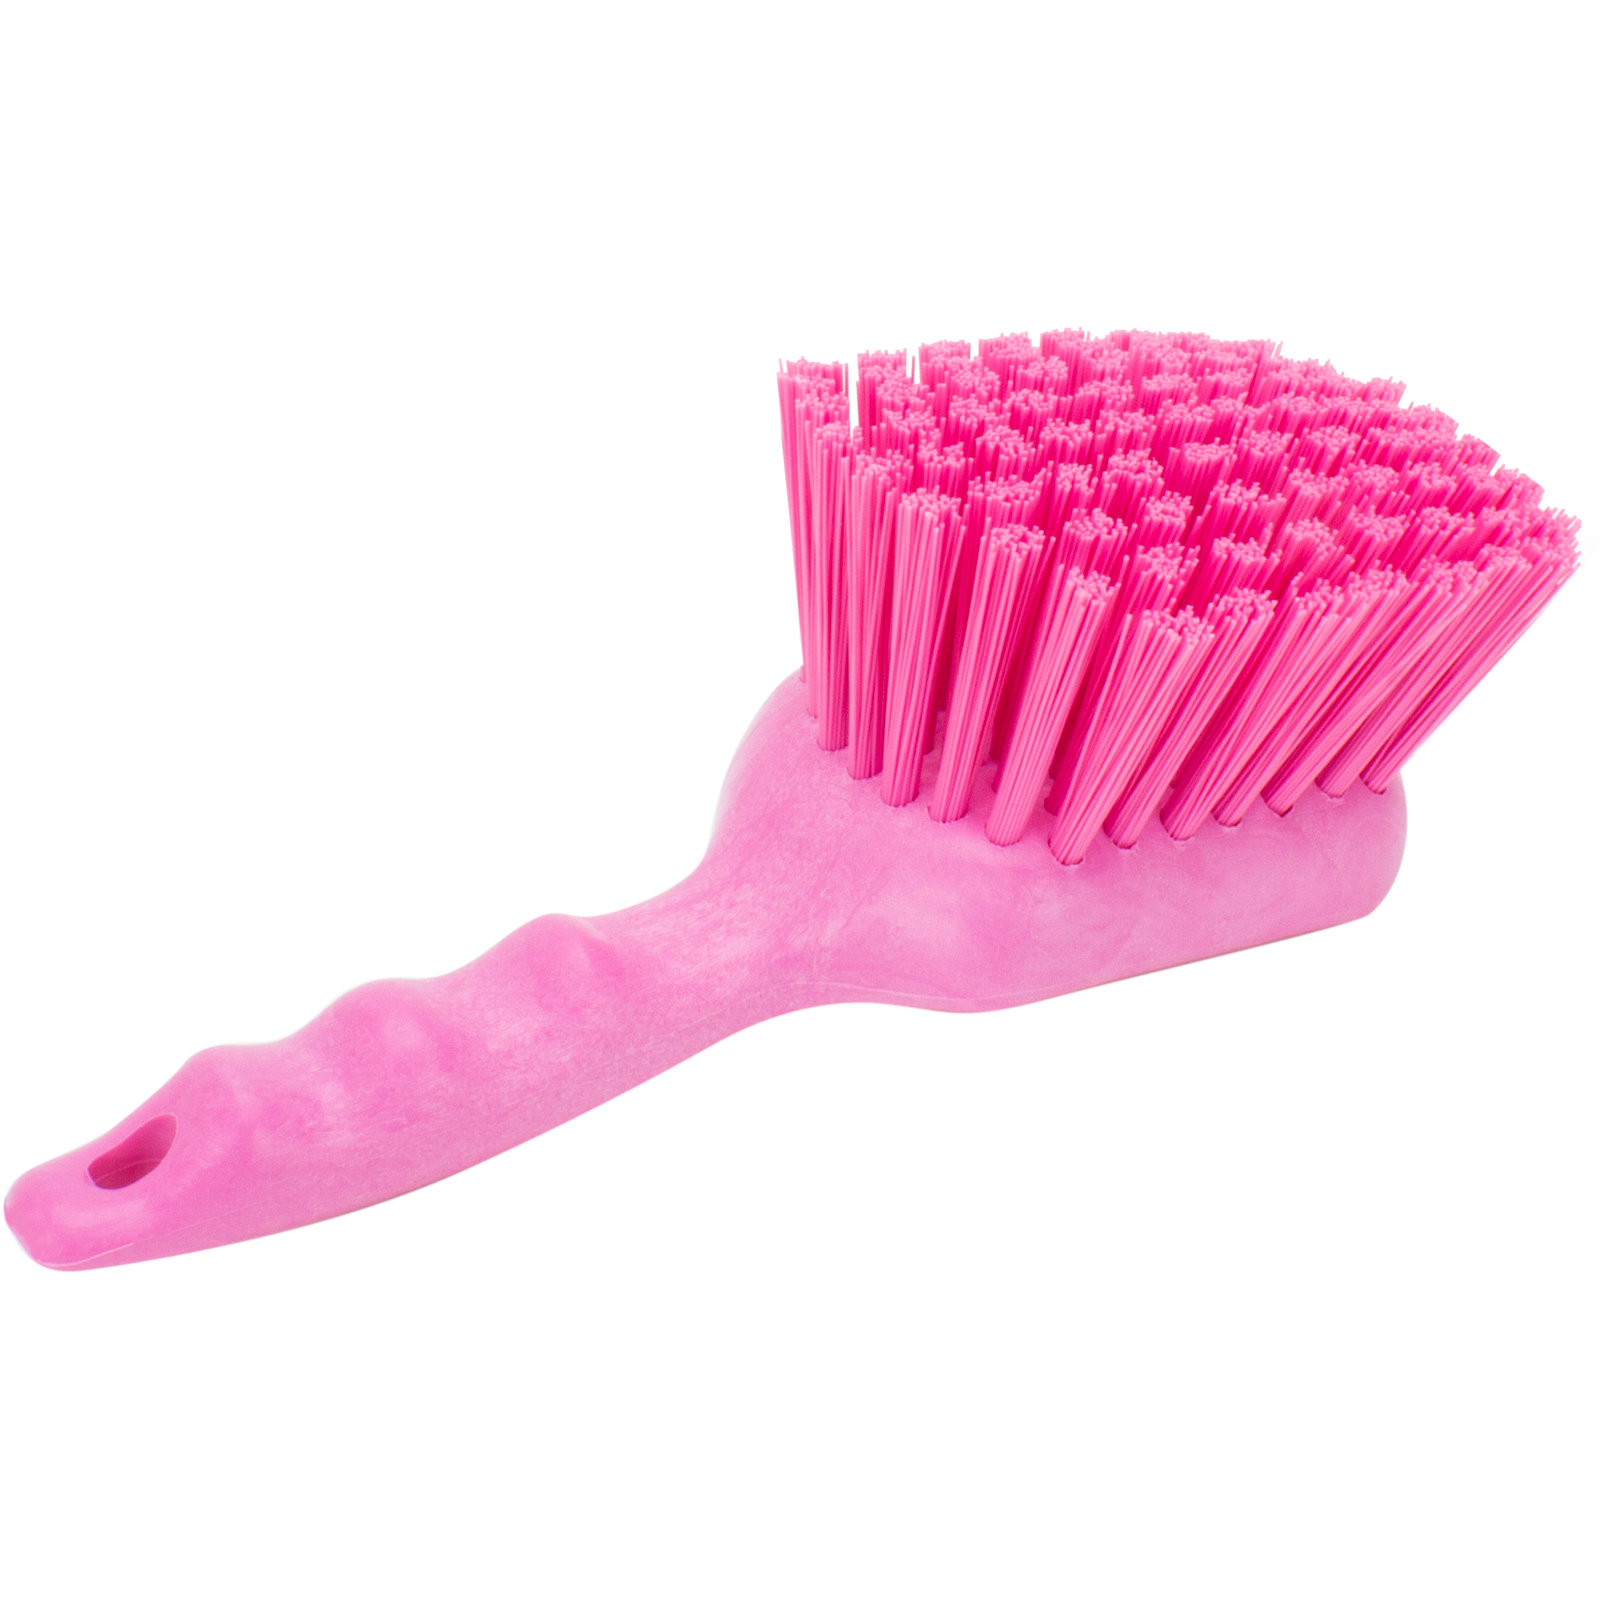 Pretty & Pink Soft Bristle Scrub Brush with Scraper - Scratch Free